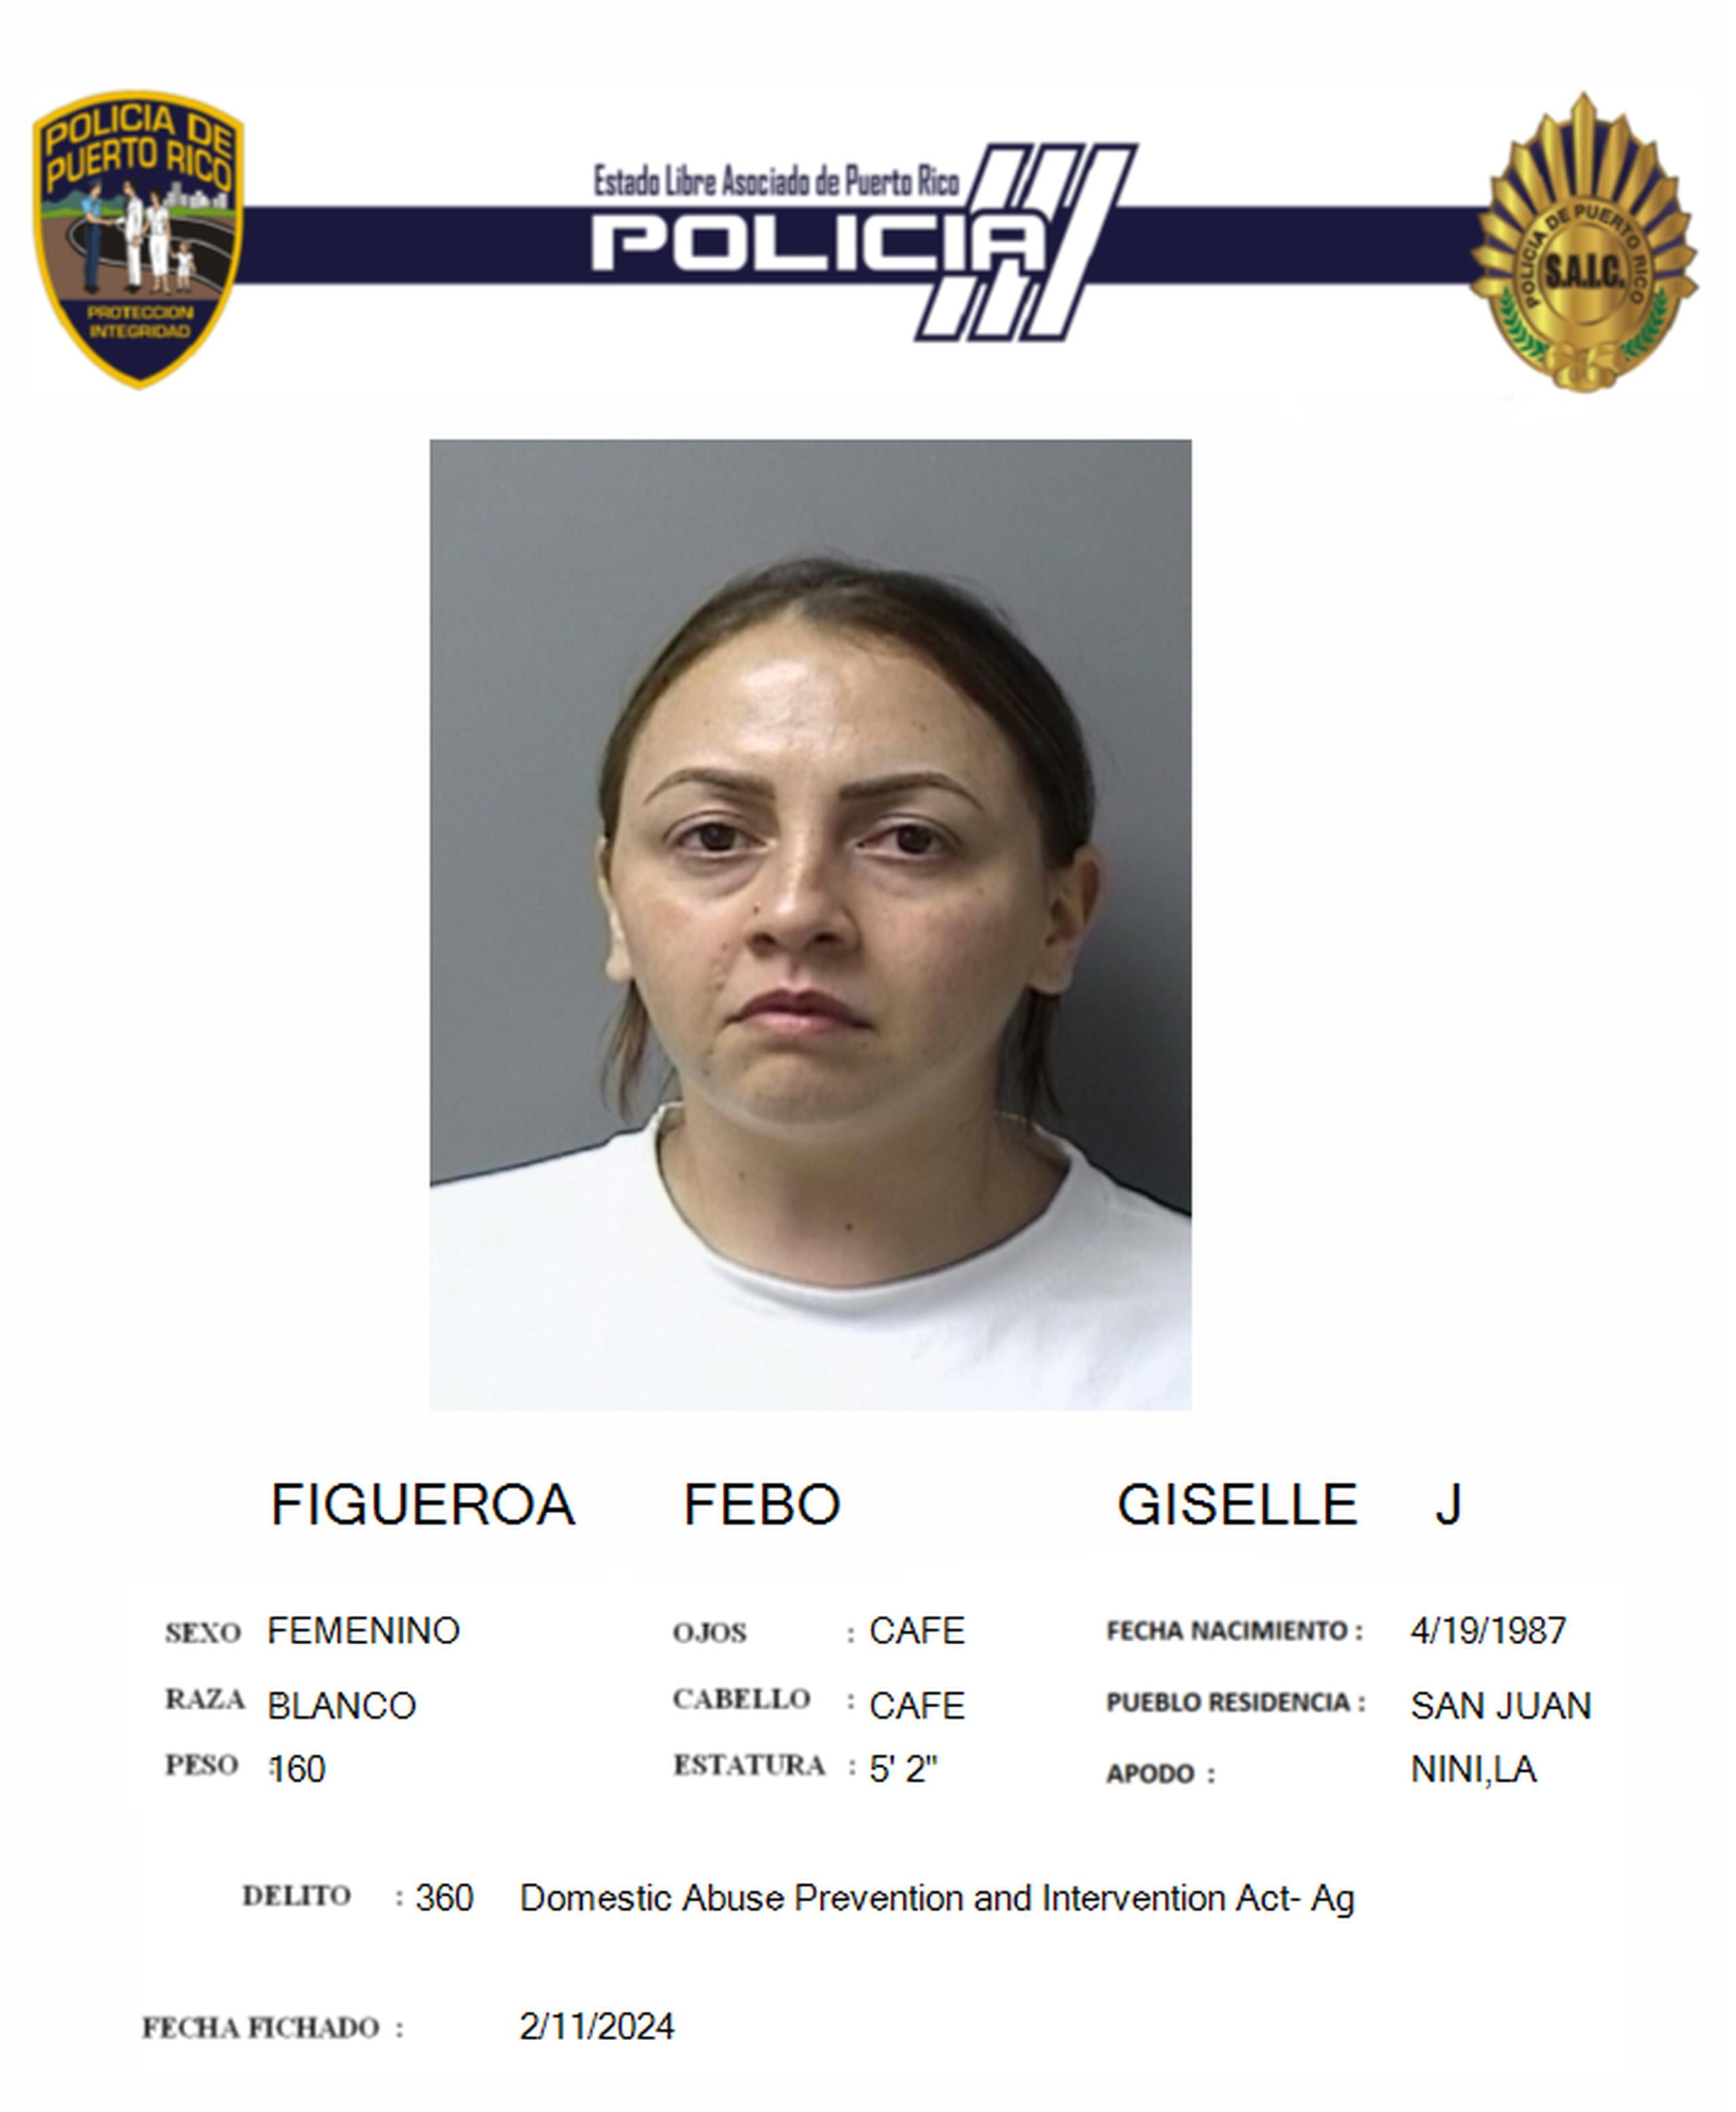 Giselle J. Figueroa Febo, enfrenta cargos por violencia doméstica.